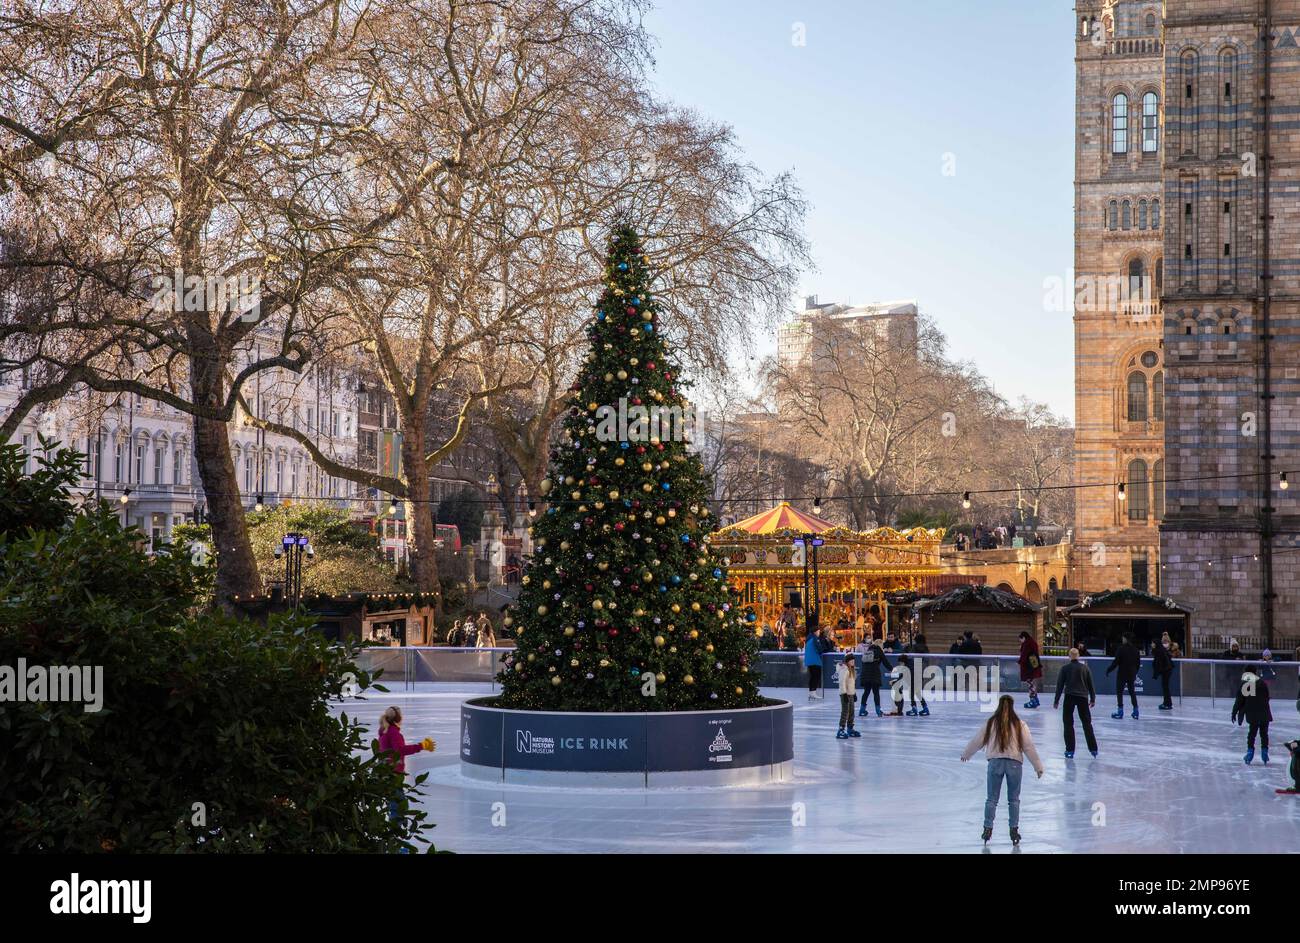 Die Eislaufbahn im Natural History Museum in London ist tagsüber geöffnet, mit einem Weihnachtsbaum in der Mitte und einem Karussell im Hintergrund. Stockfoto